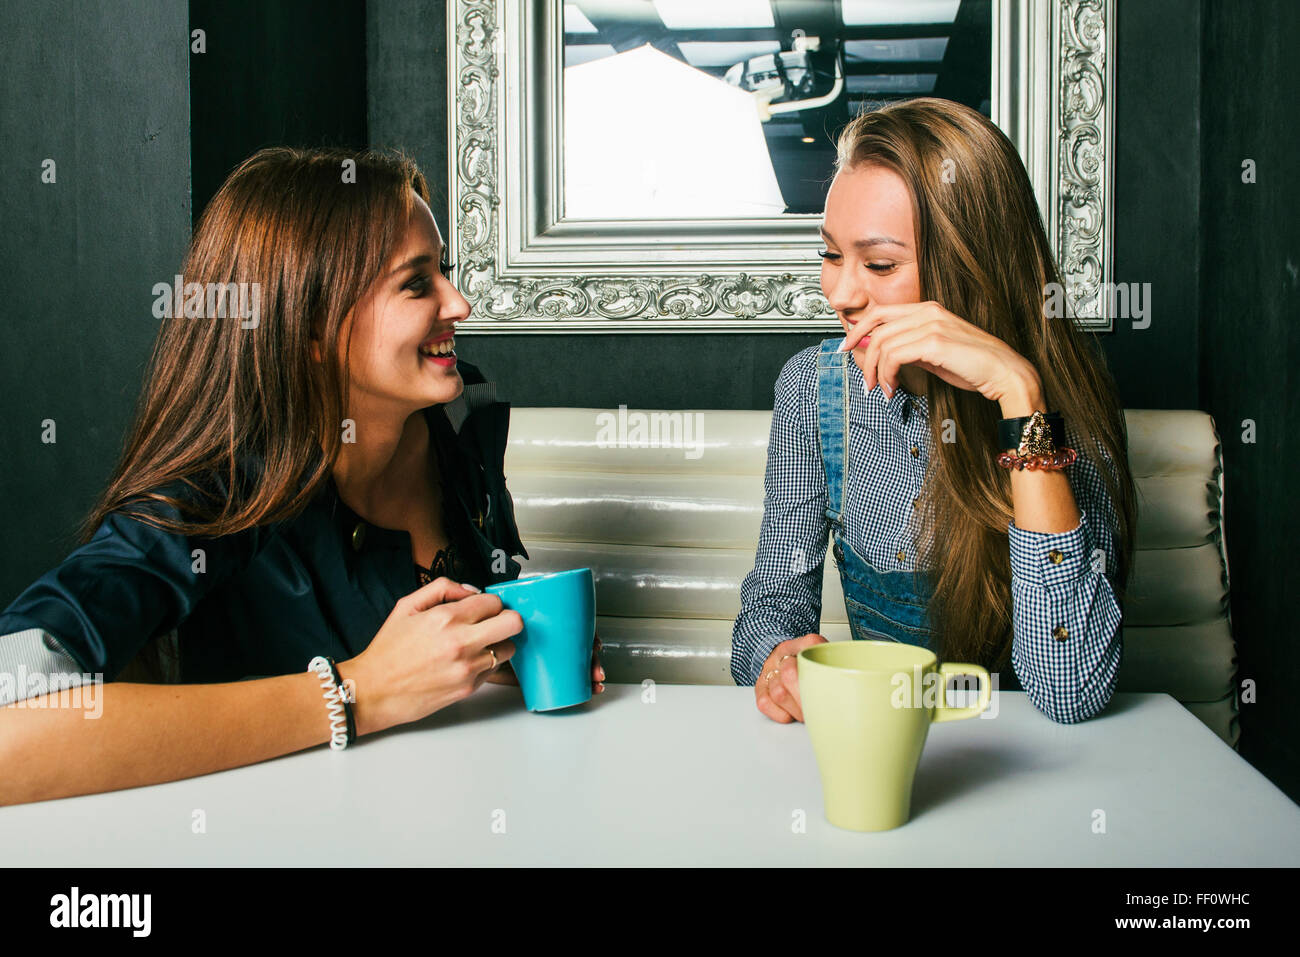 Women talking in coffee shop Stock Photo